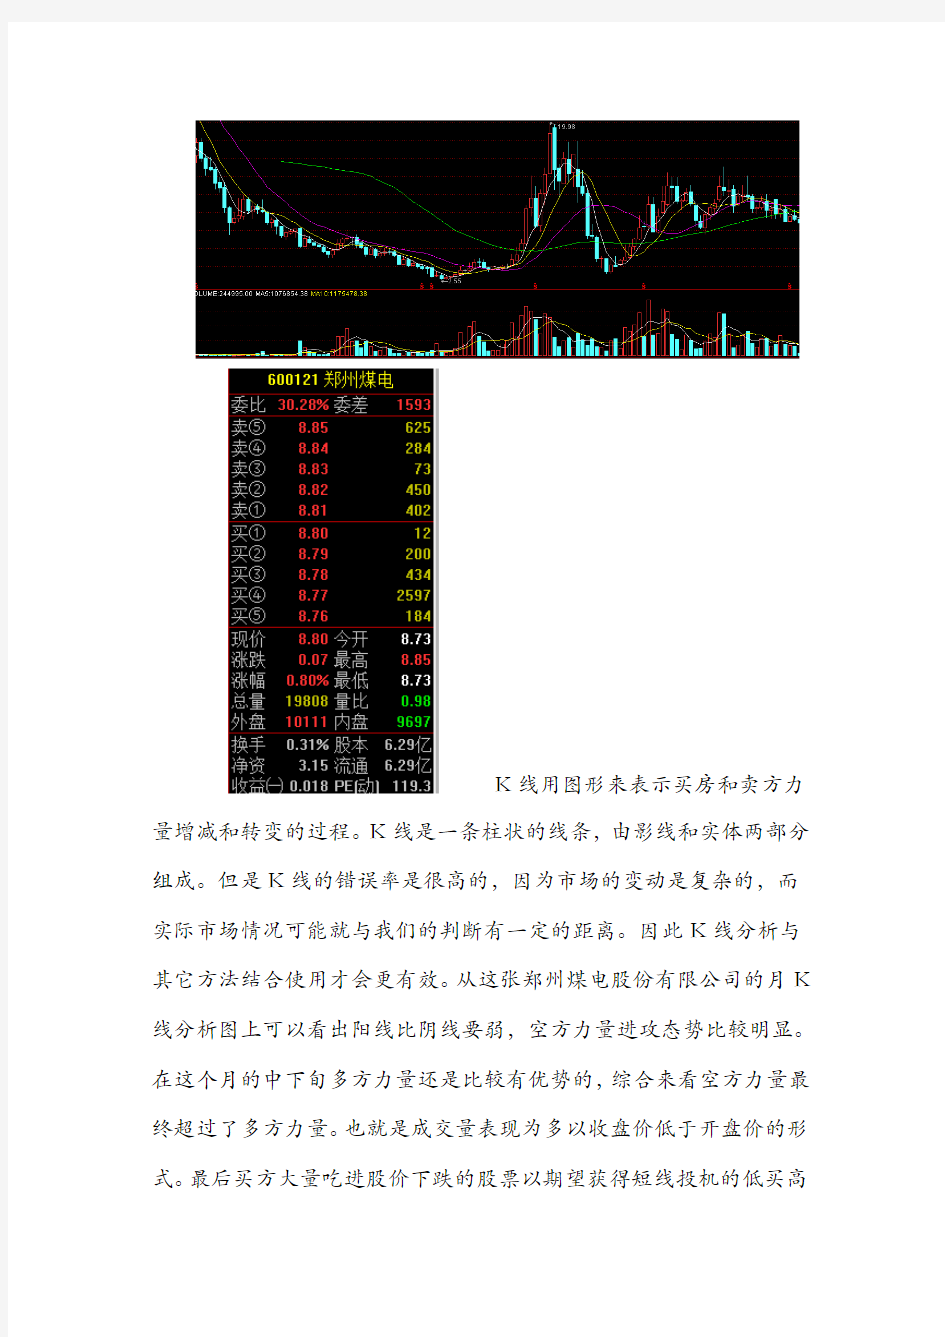 郑州煤电股份有限公司上市公司技术分析报告22